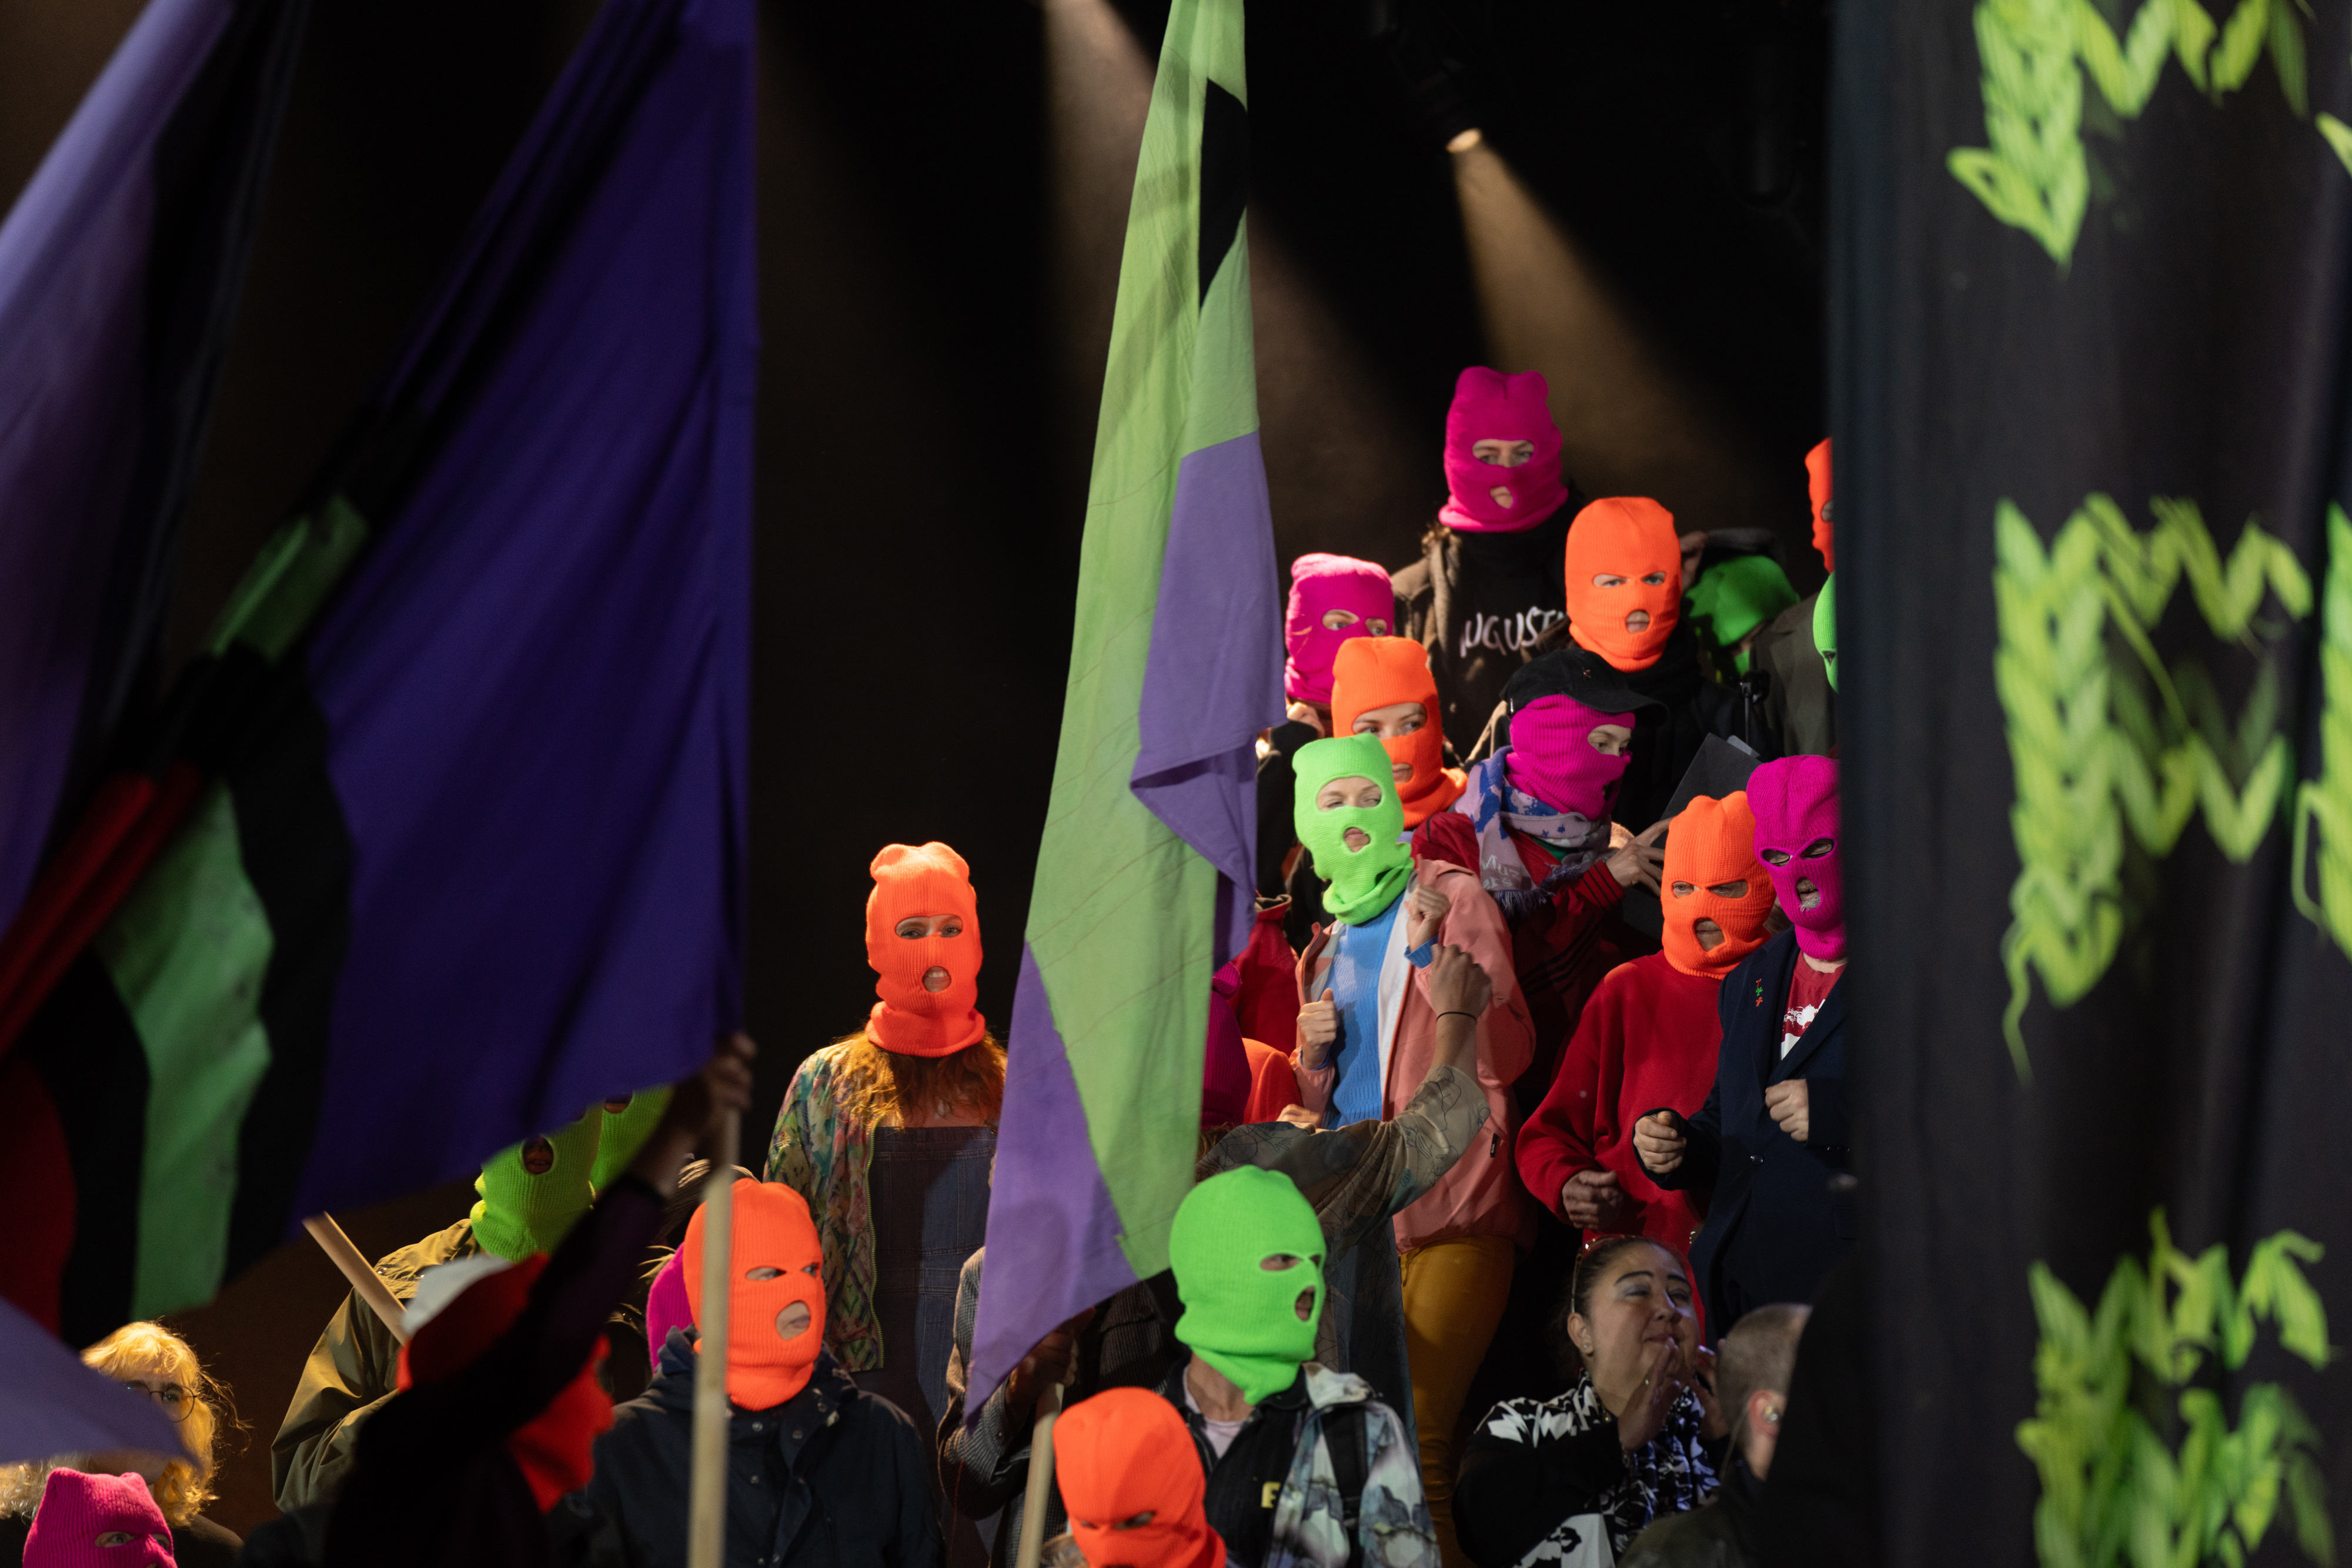 Masked people on stage